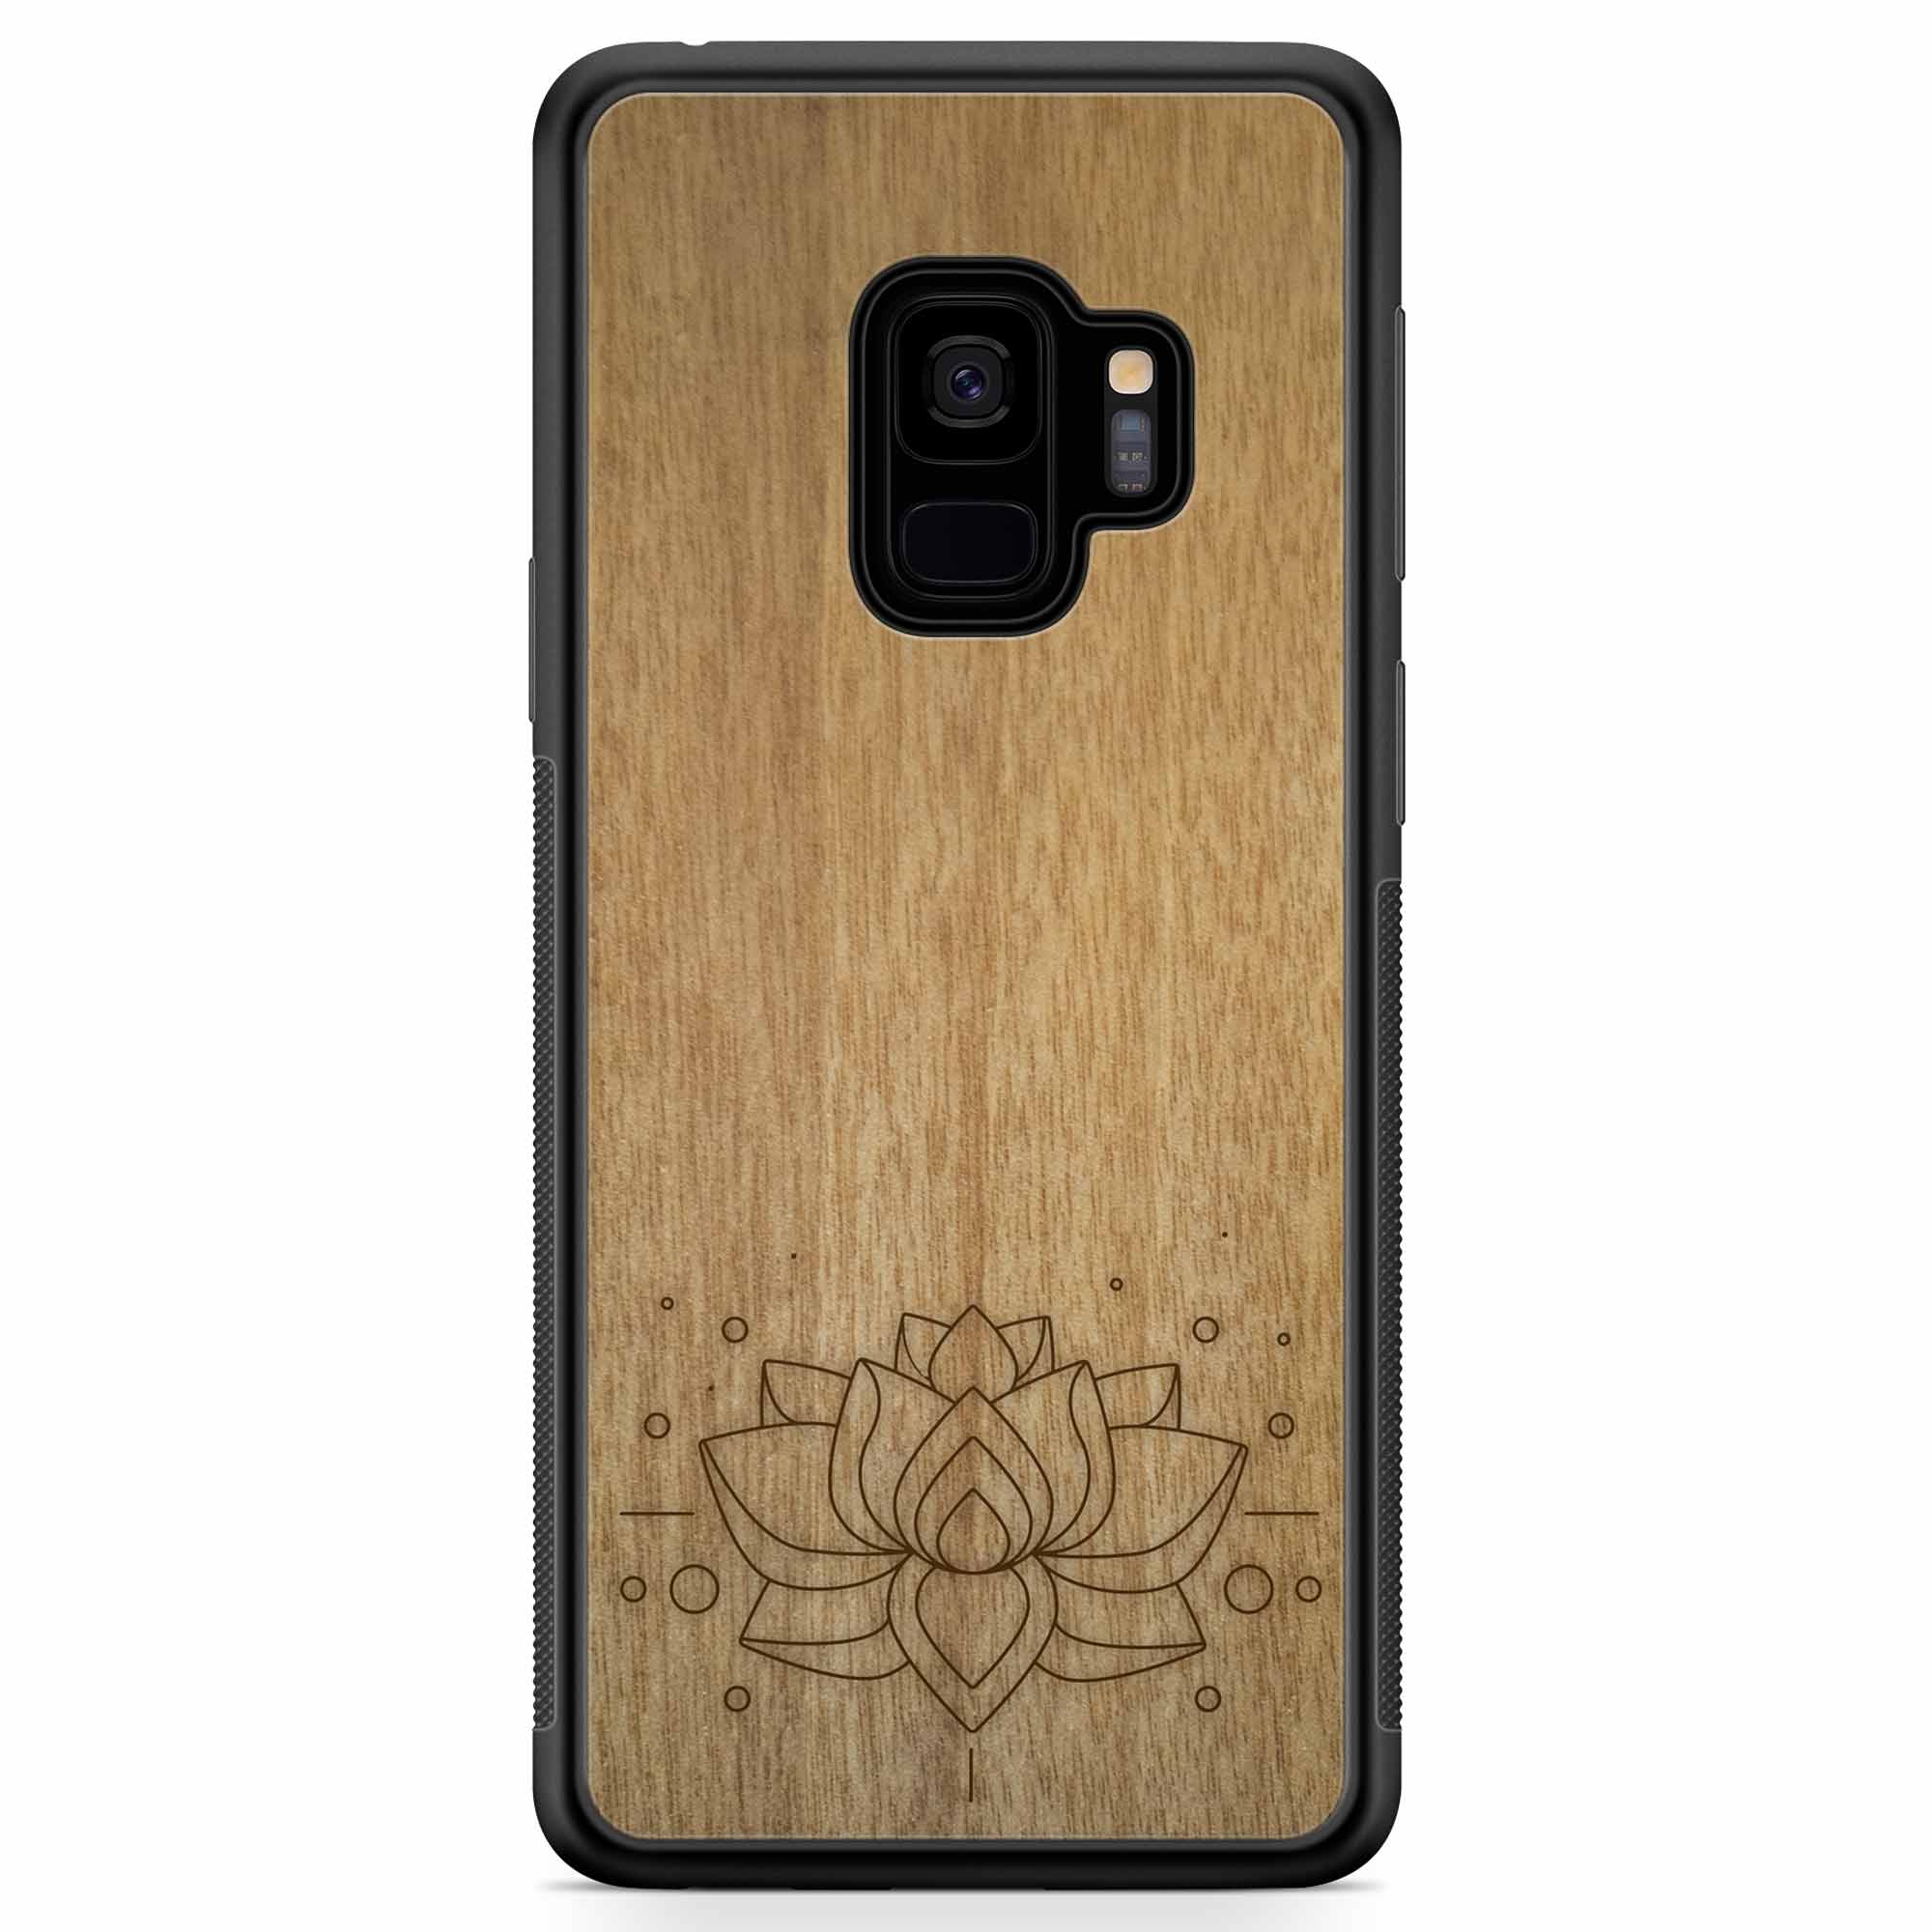 Деревянный чехол для телефона Samsung S9 с гравировкой Lotus